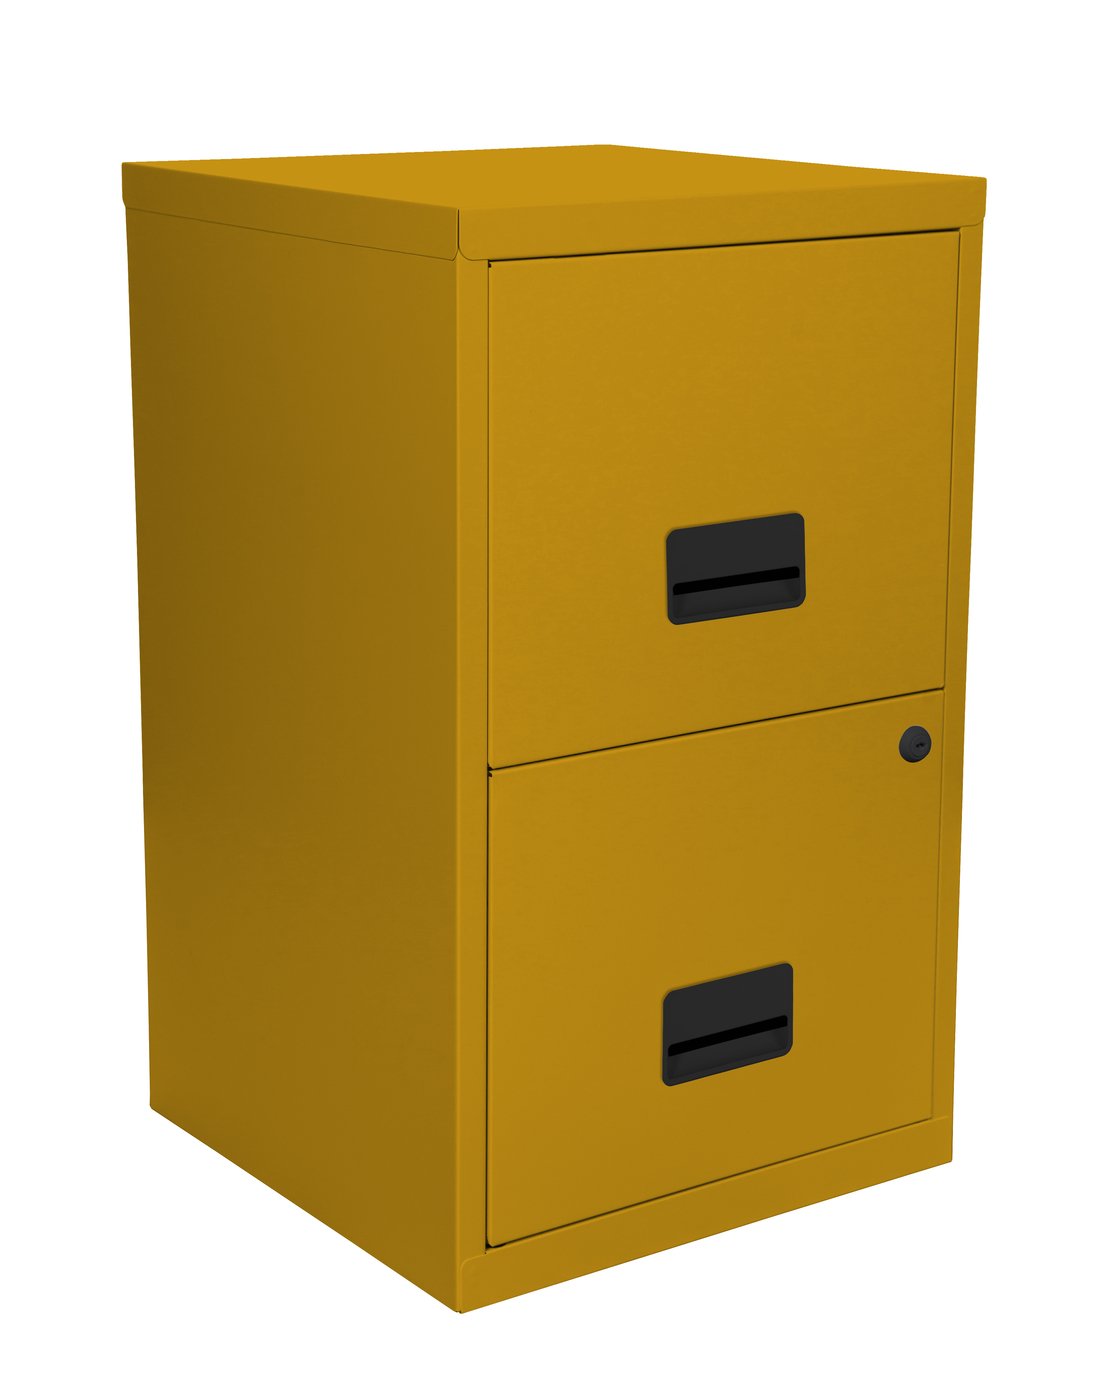 Pierre Henry 2 Drawer Metal Filing Cabinet - Mustard Yellow